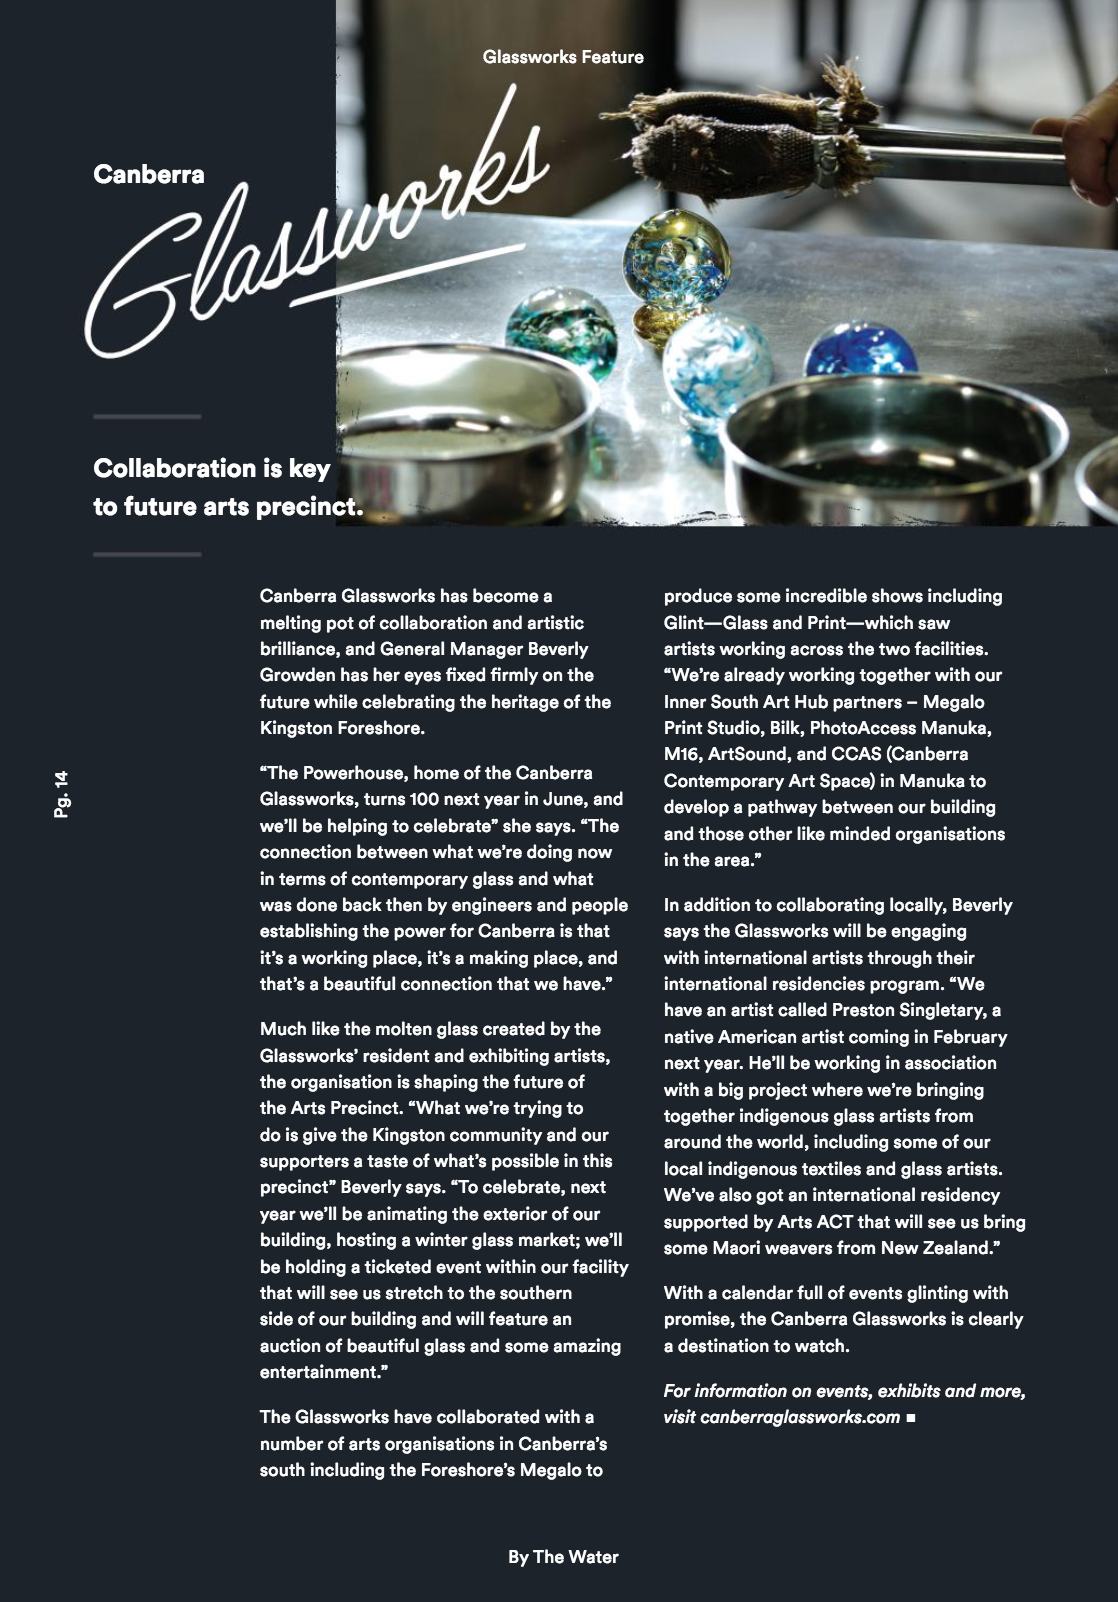 Canberra Glassworks